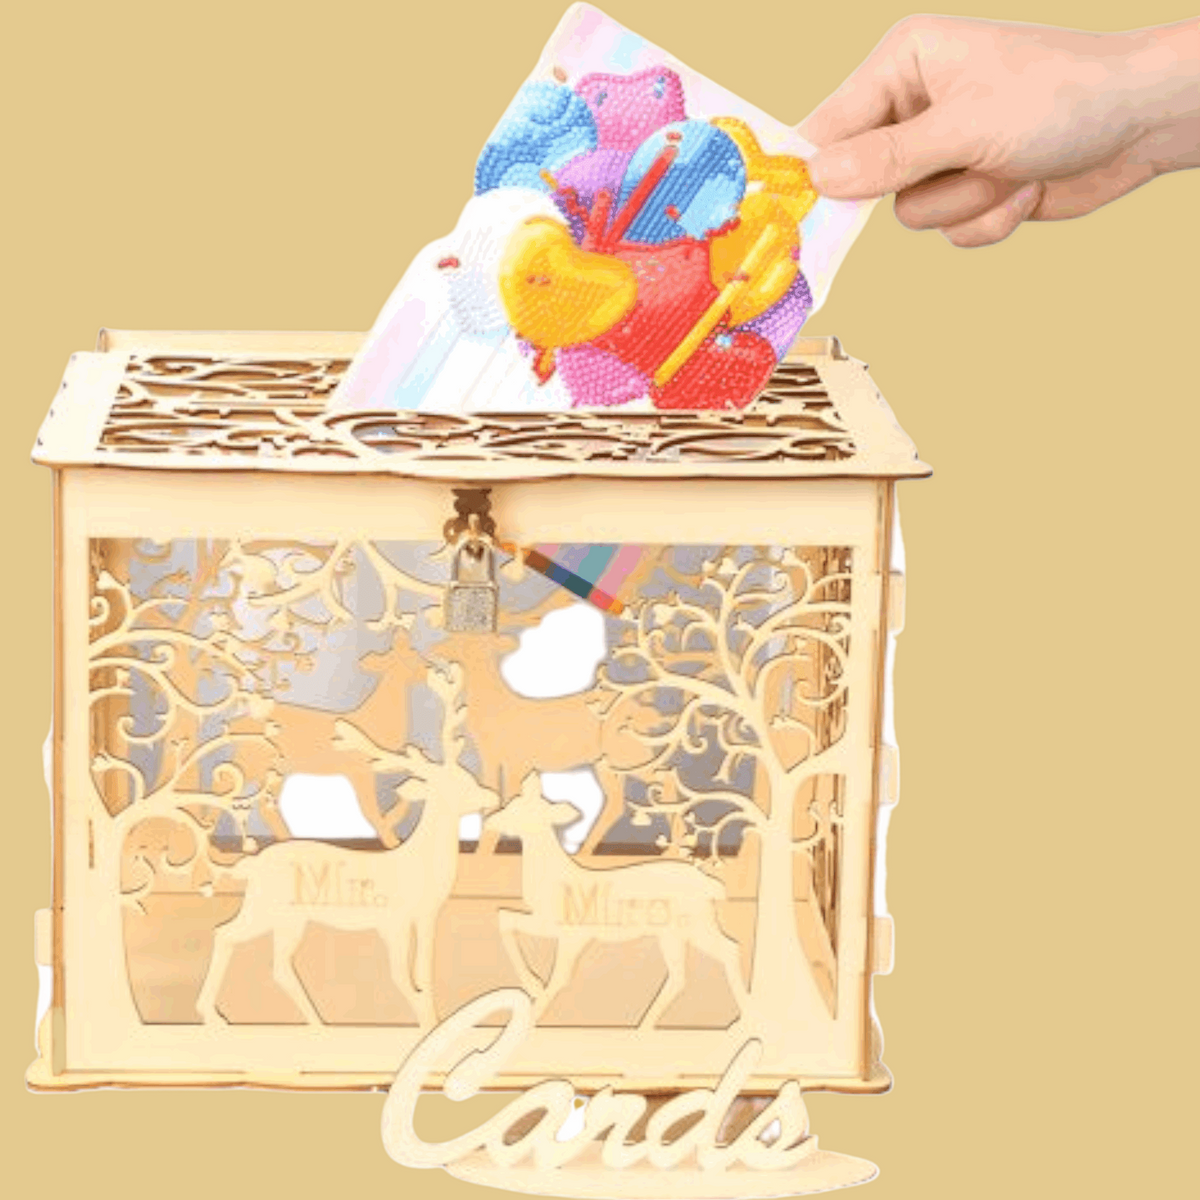 صندوق بطاقات زفاف خشبي أنيق وبسيط يمكنك صنعه بنفسك